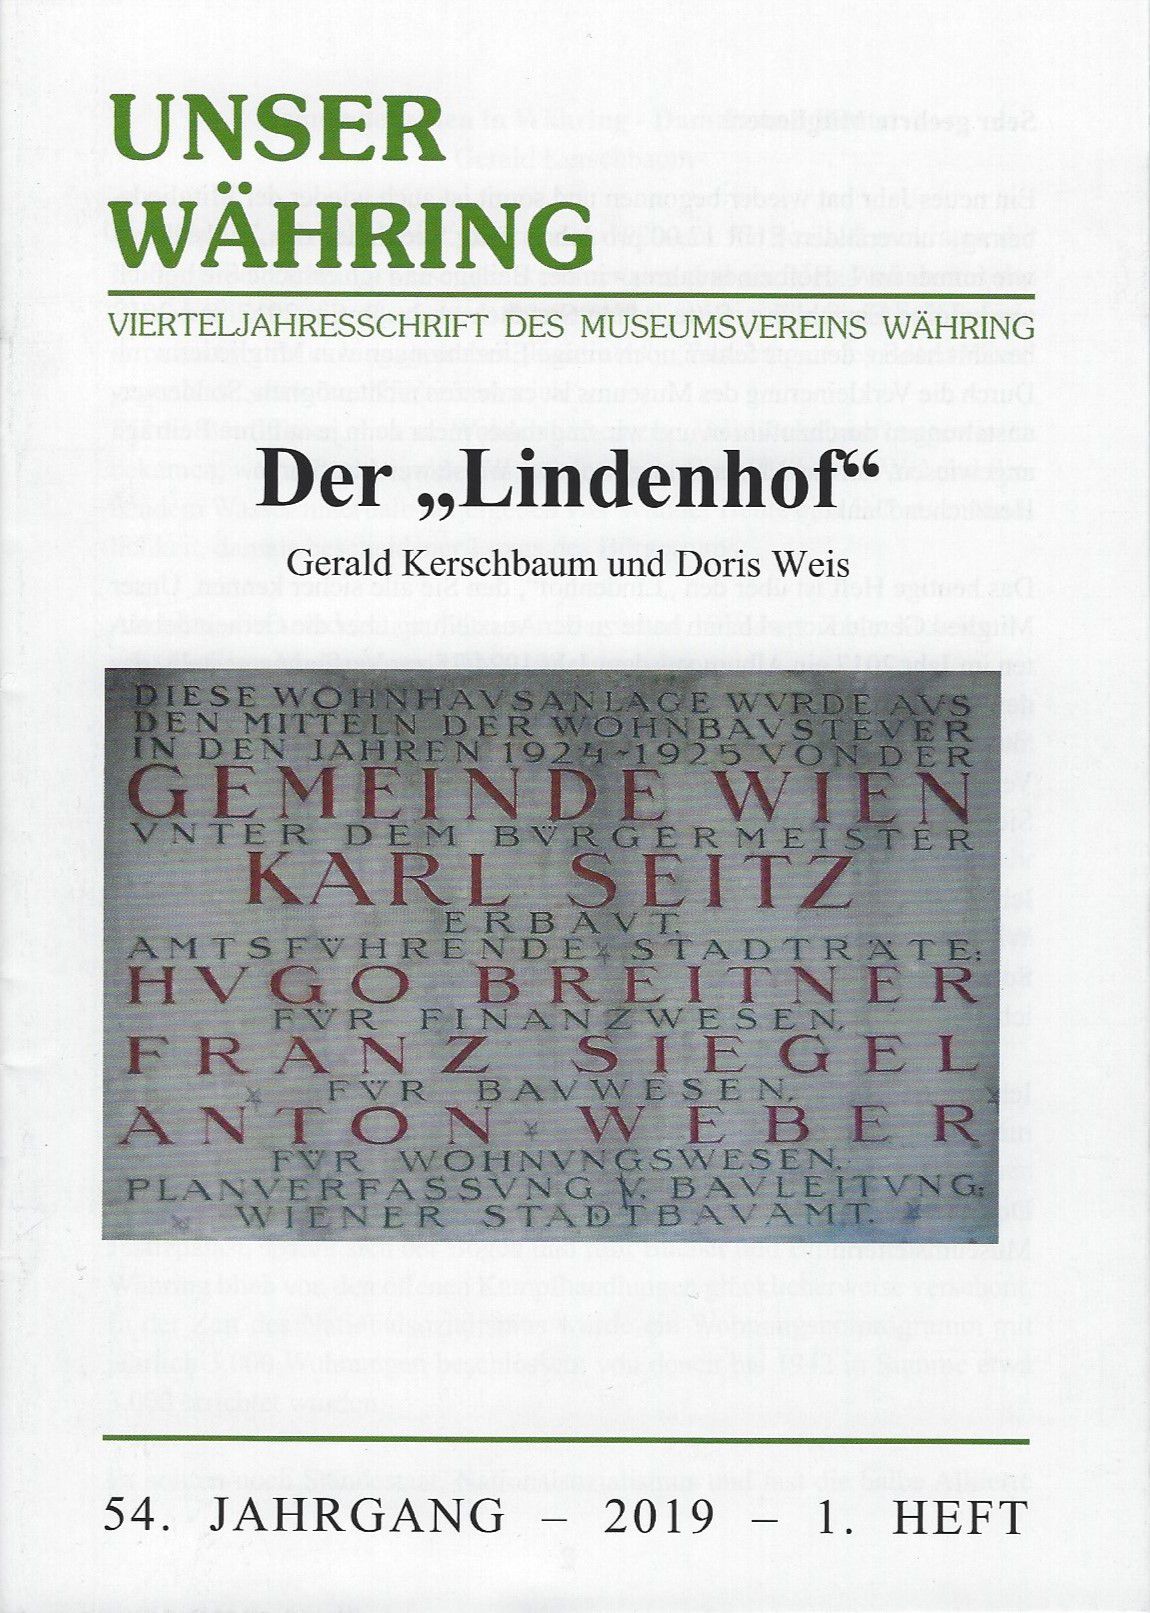 Publikation: Der "Lindenhof", Bezirksmuseum Wärhing